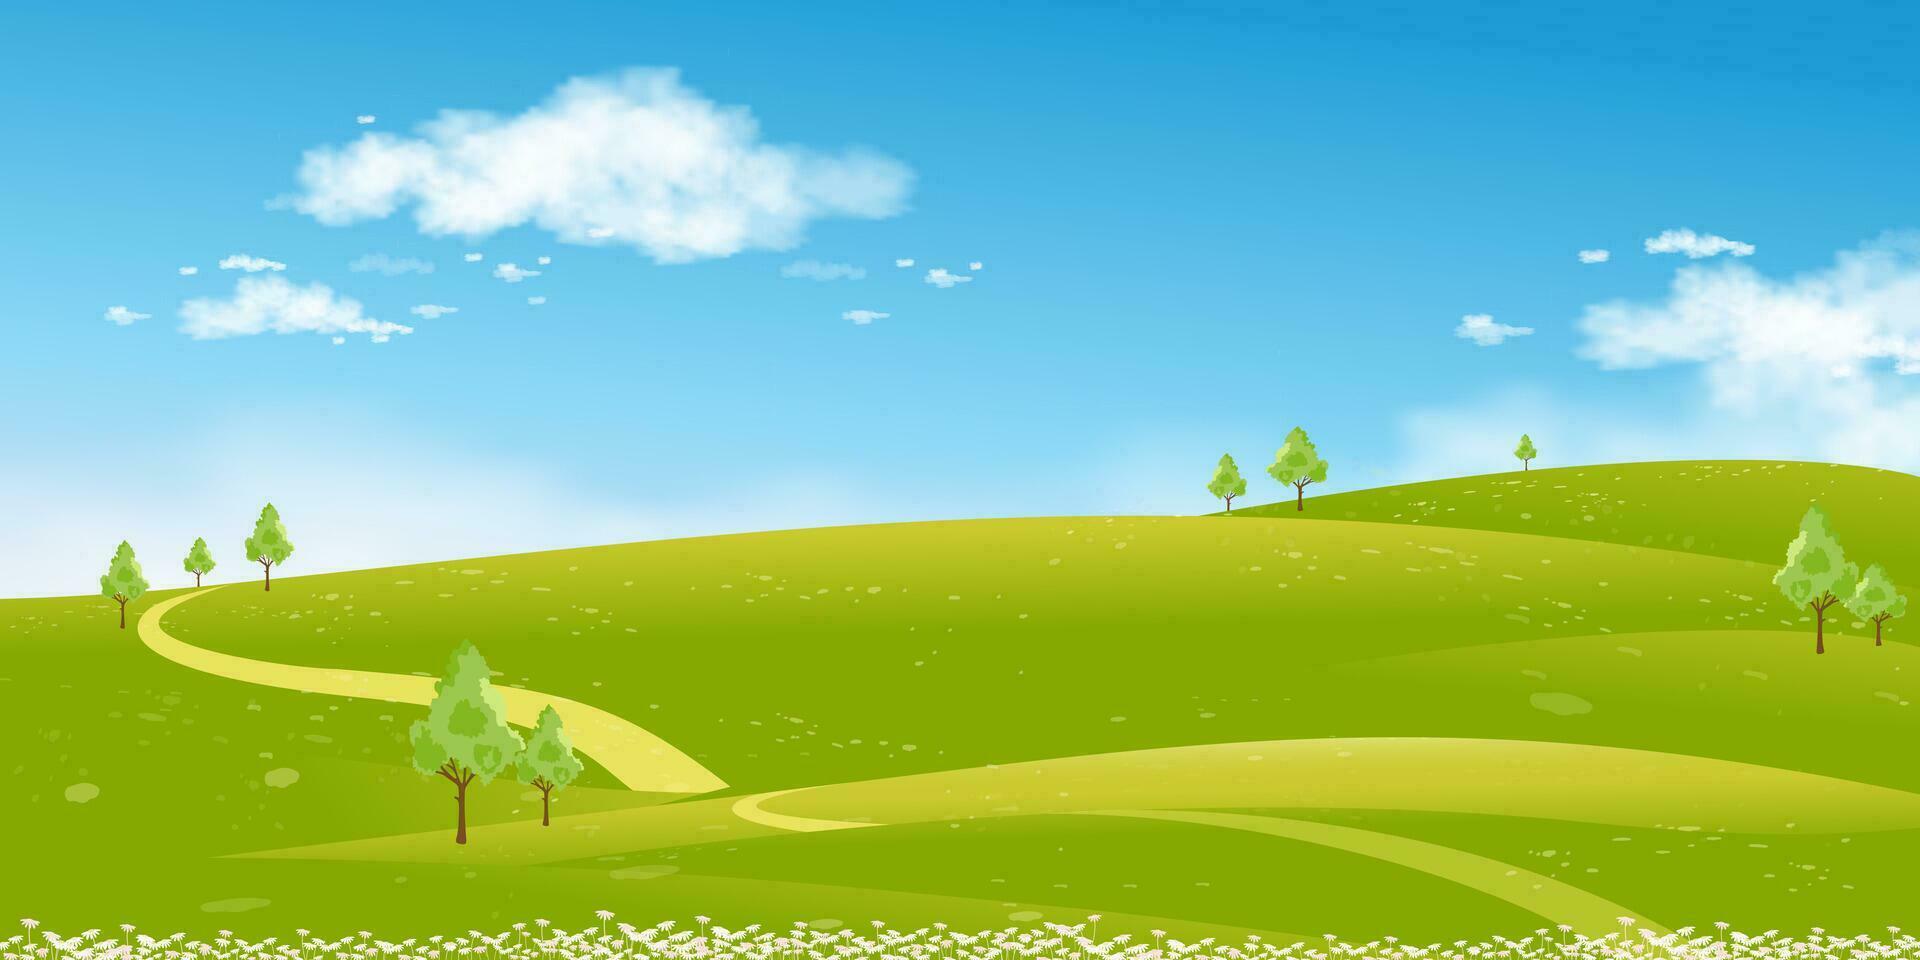 voorjaar landschap groen velden, bergen, blauw lucht en wolken achtergrond, horizon vredig landelijk natuur zonnig dag zomer met gras land.cartoon vector illustratie voor voorjaar en zomer banier